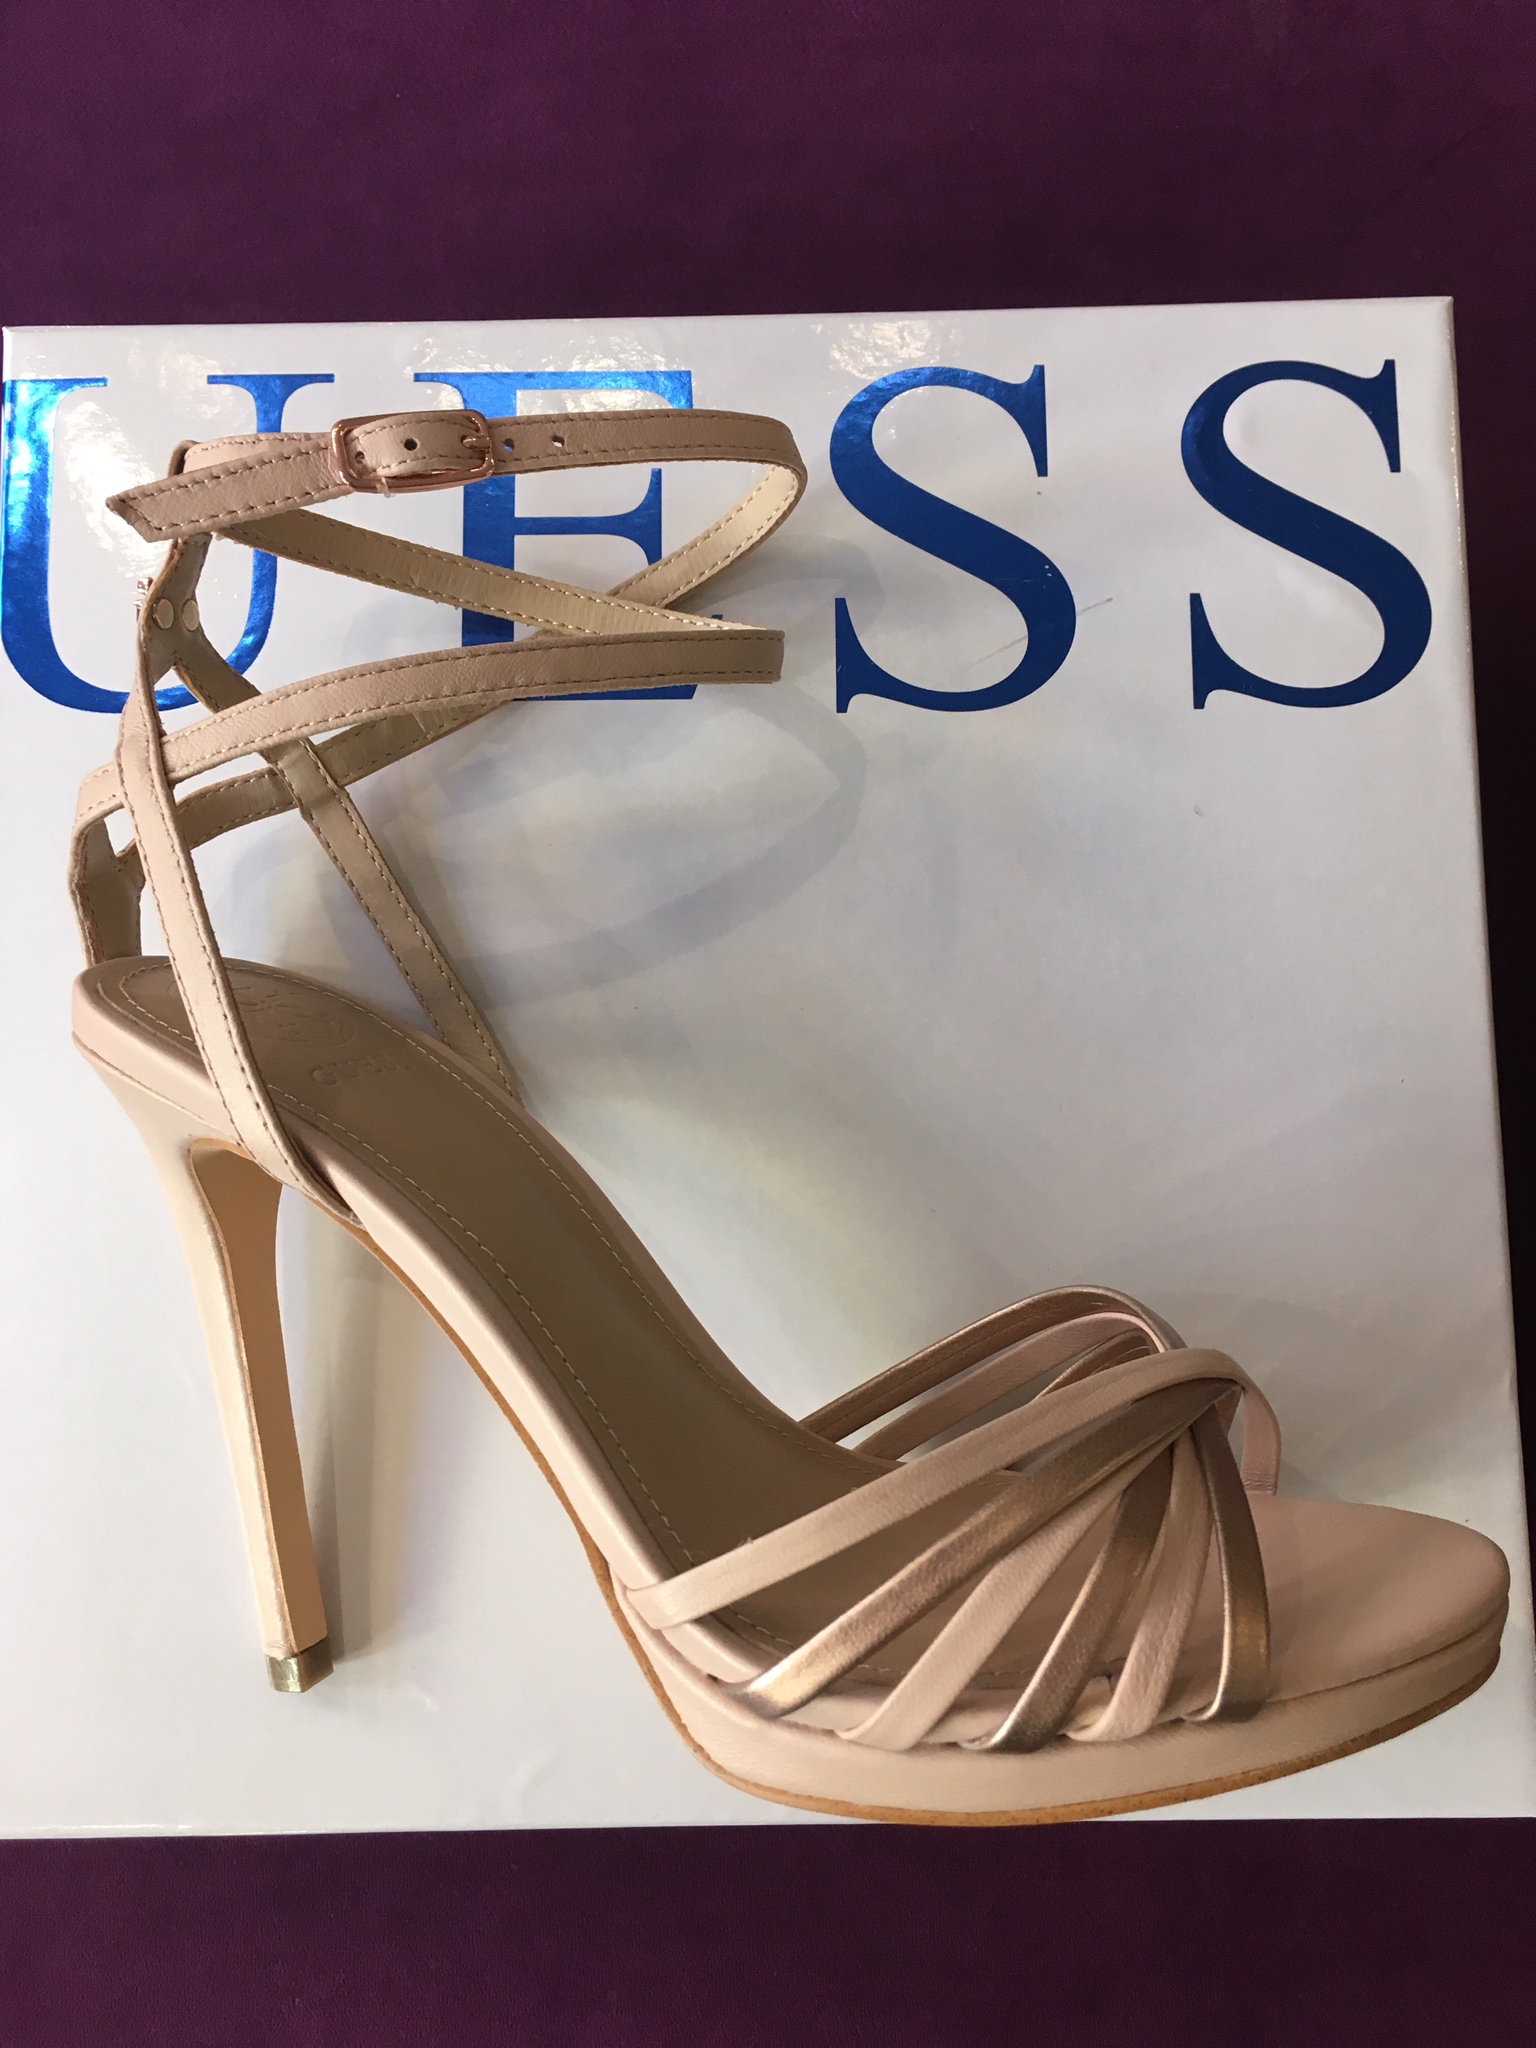 Guess – Store – J'Adore Shoe Boutique